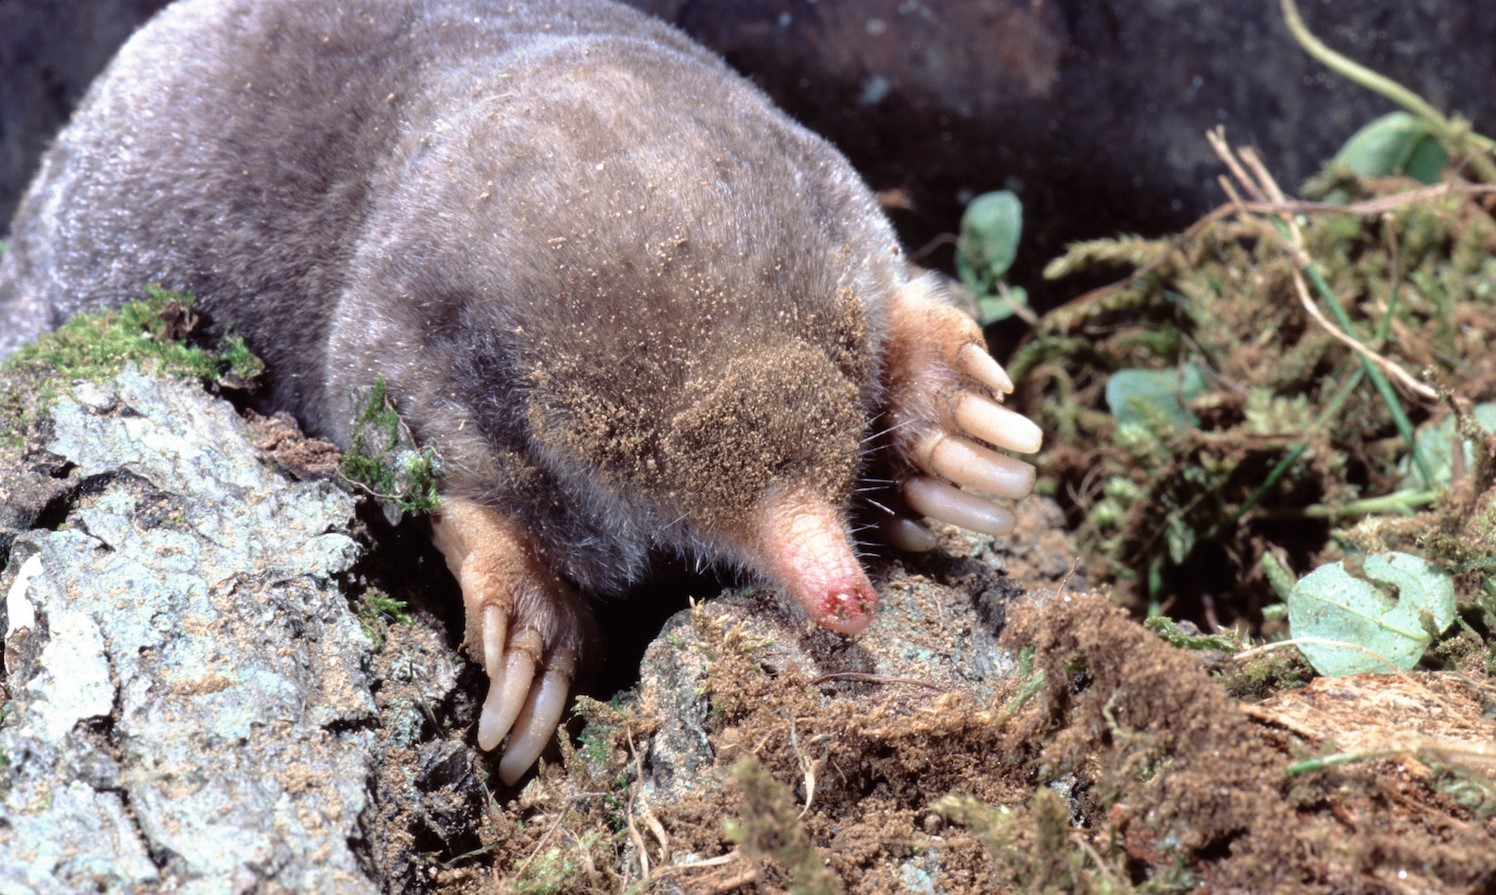 Close-up of a mole.